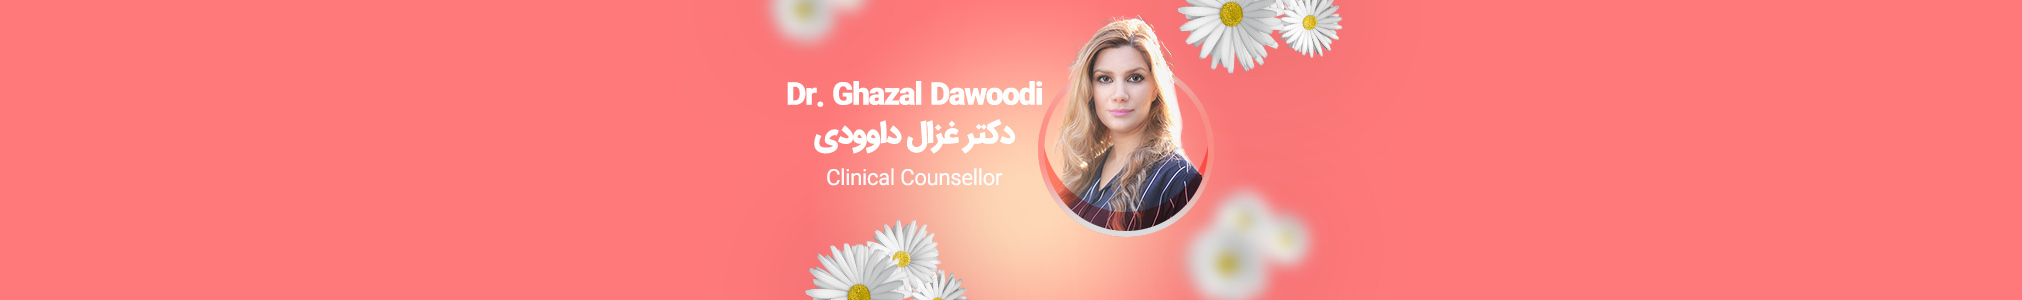 Dr. Ghazal Dawoodi